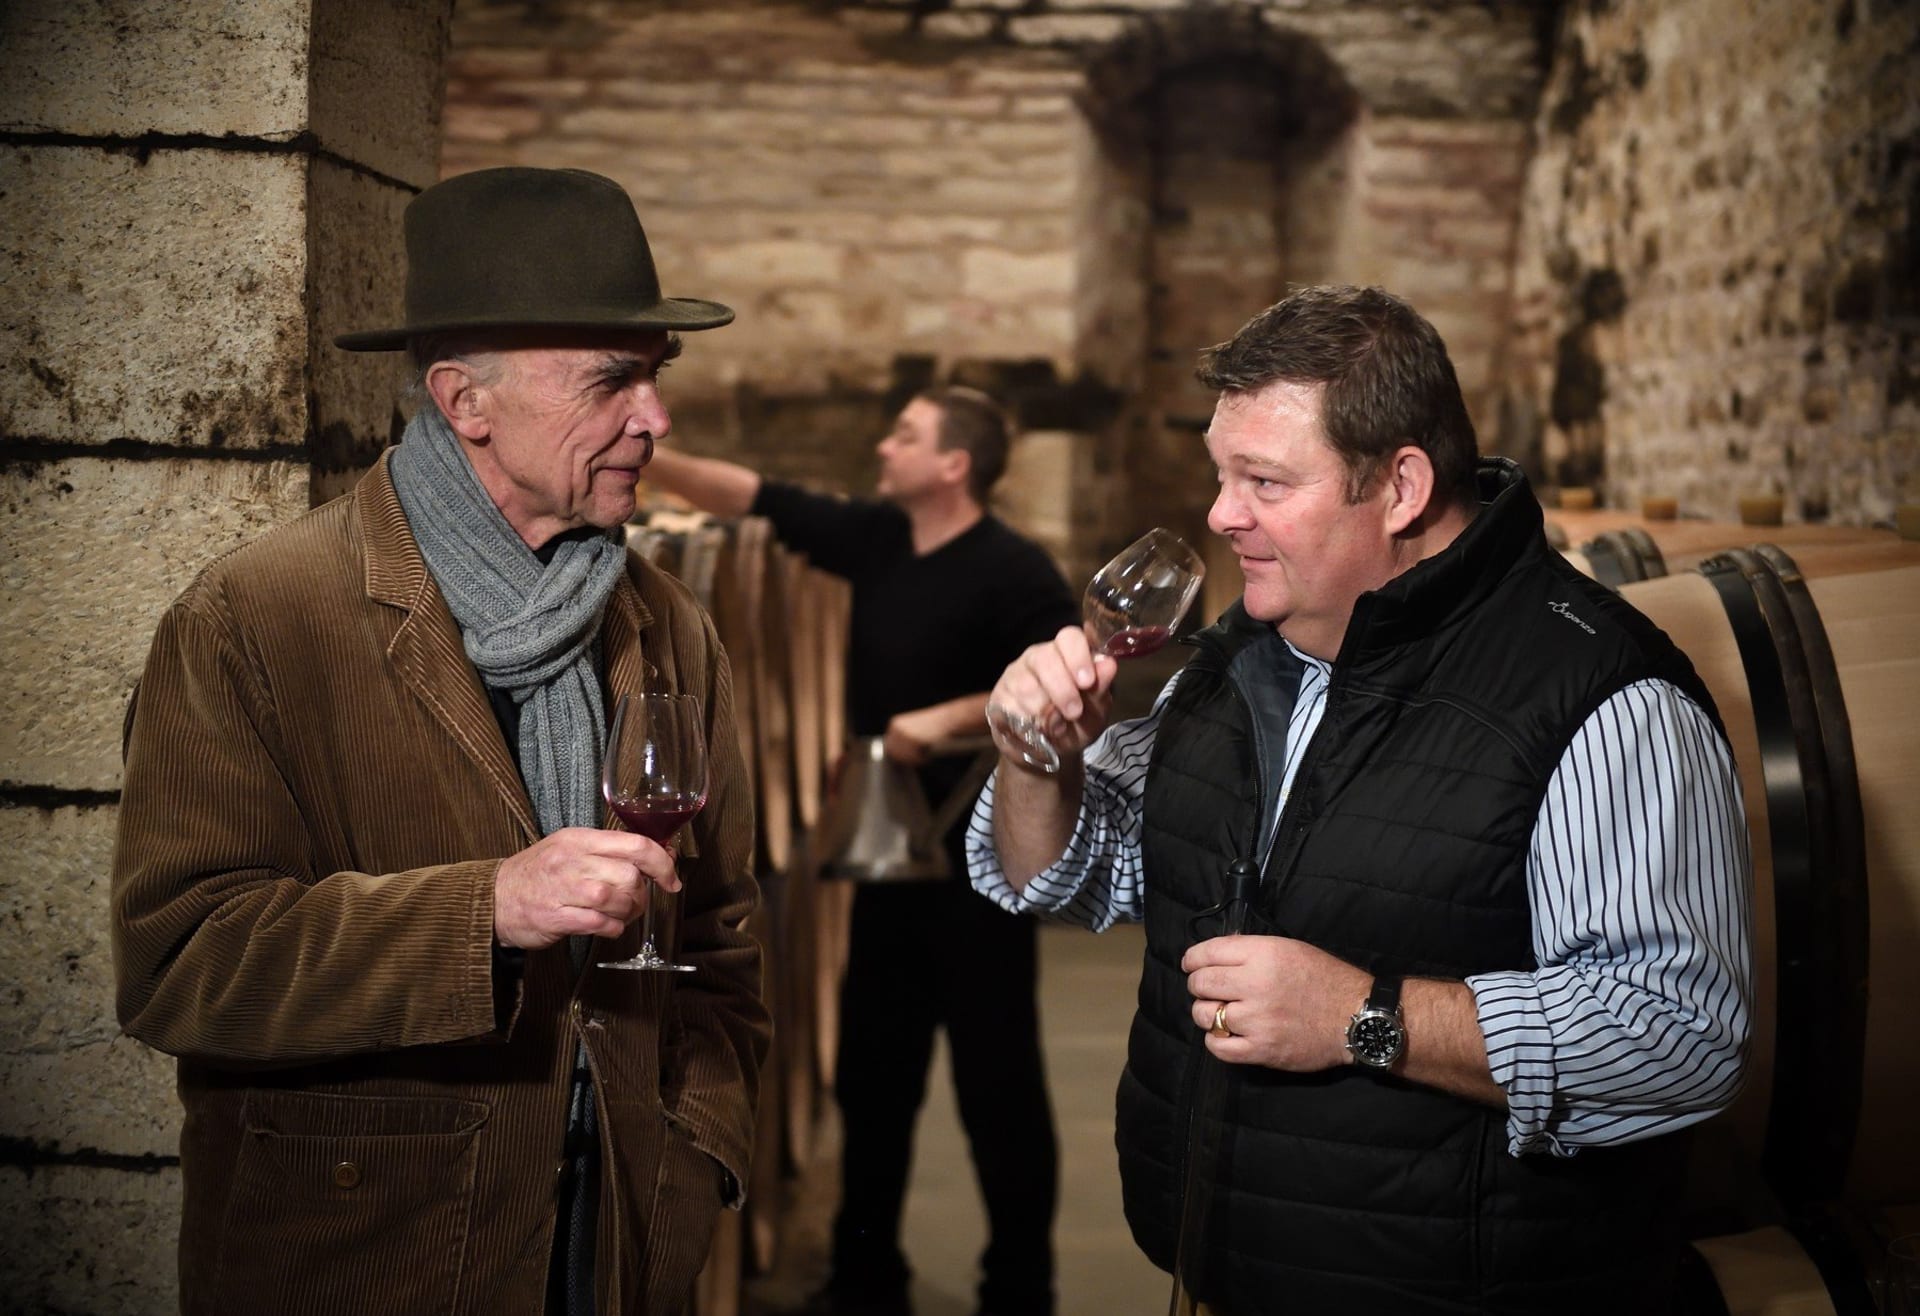 Aubert de Villaine a Bertrand de Villaine, hlavní postavy vinařství Romanee Conti při ochutnávce nejdražšího vína na světě.